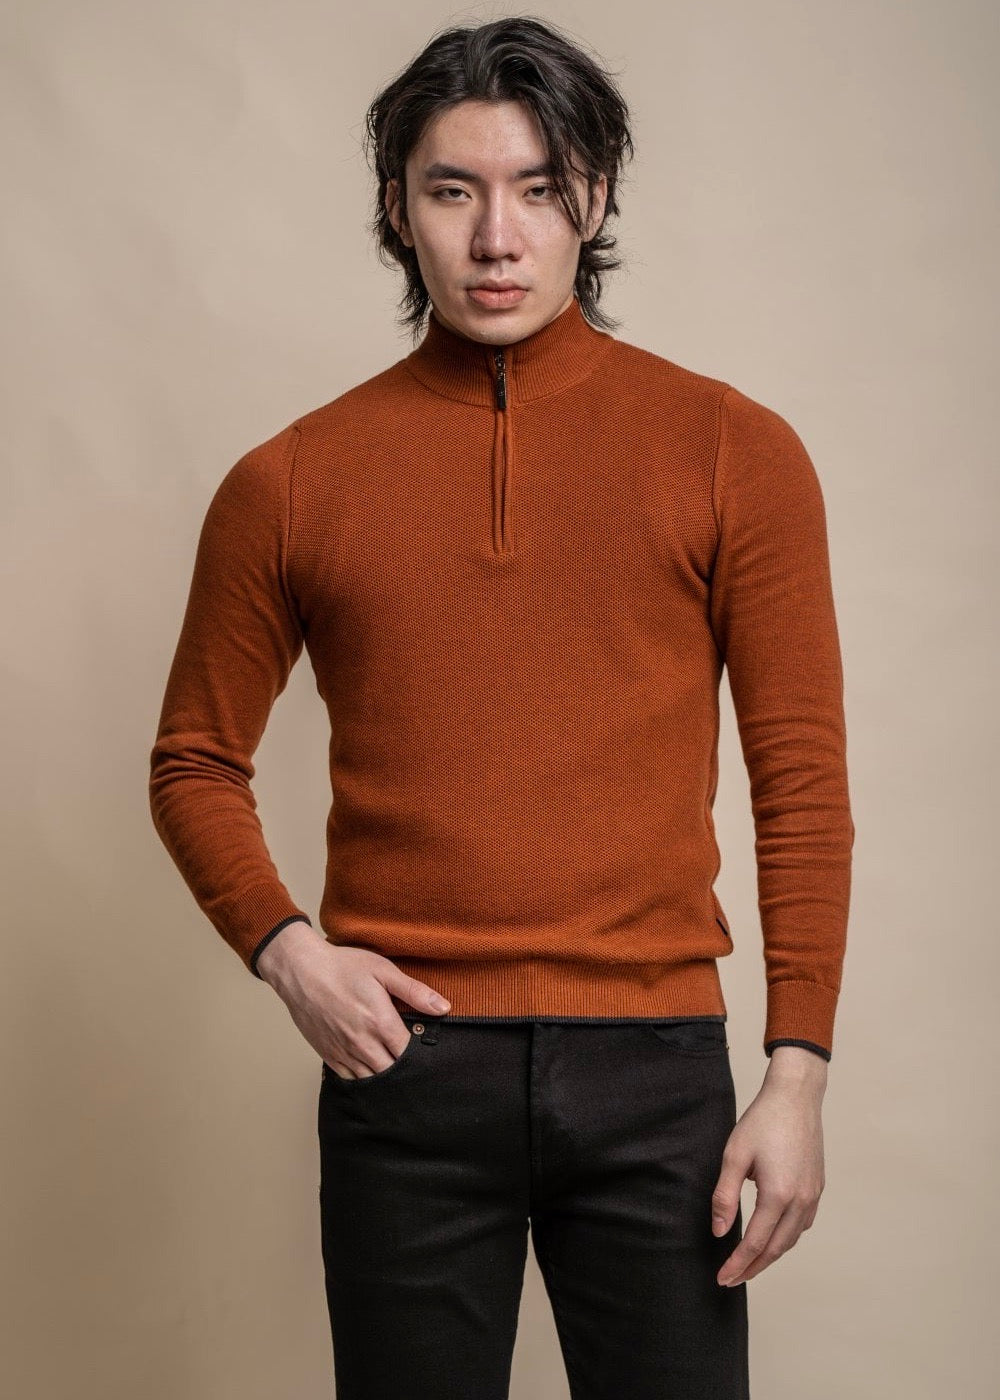 Half zip men's jumper in amber colour, showing front.